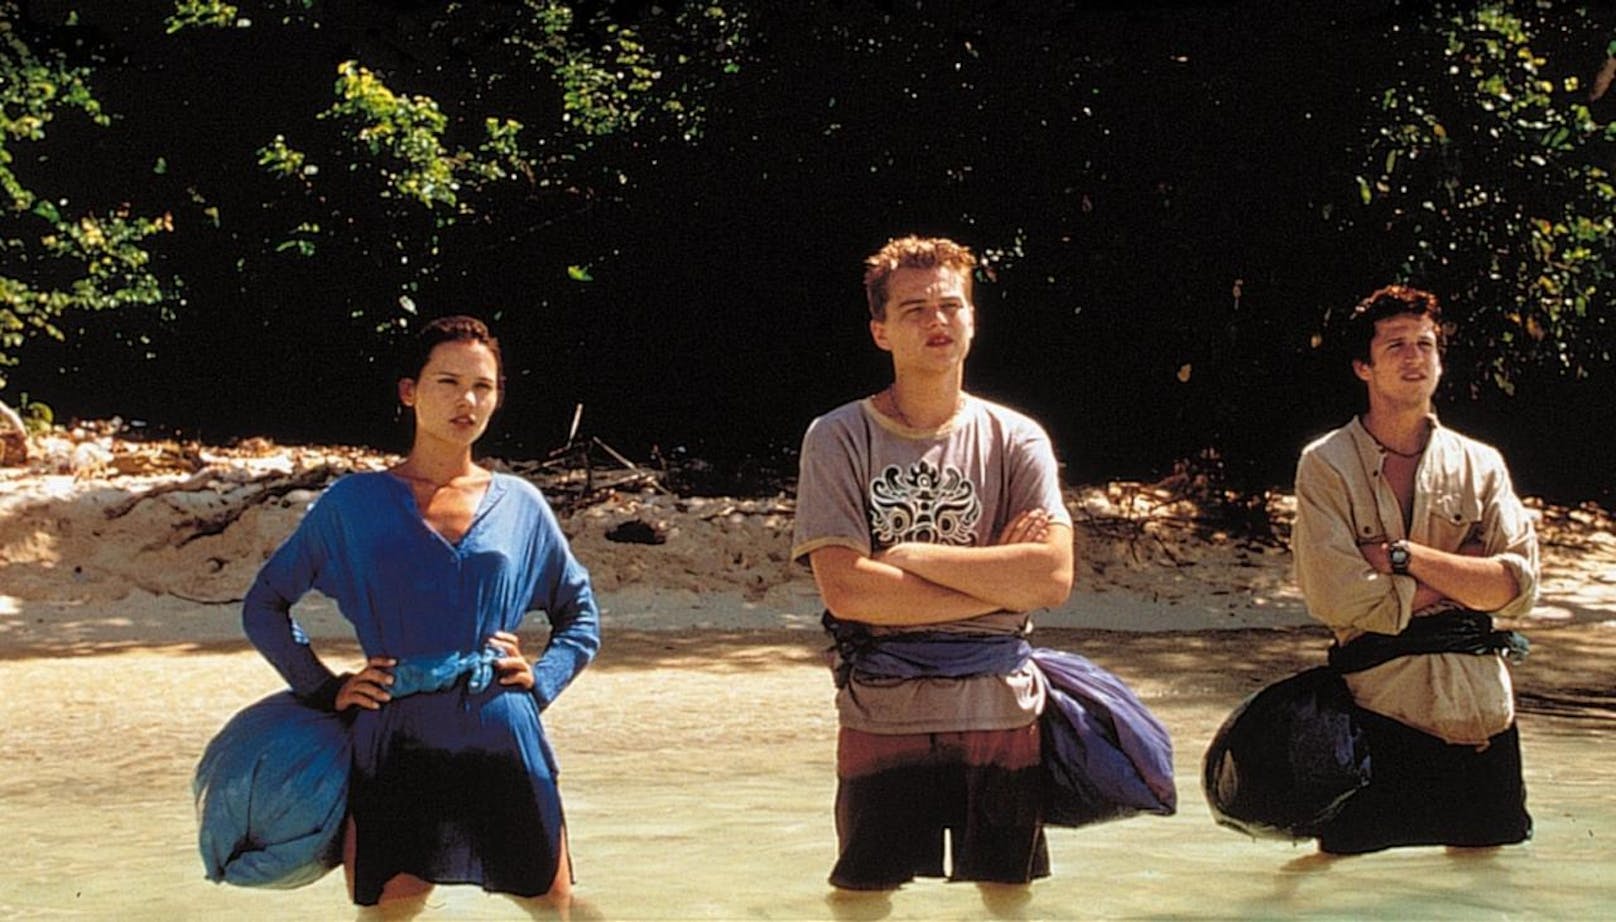 "The Beach" erschien im Jahr 2000 und war - nicht nur dank Leonardo Di Caprio - ein weltweiter Kinohit. Der Film traf den Nerv der Zeit und machte Thailand zum Sehnsuchts-Ziel für Aussteiger.